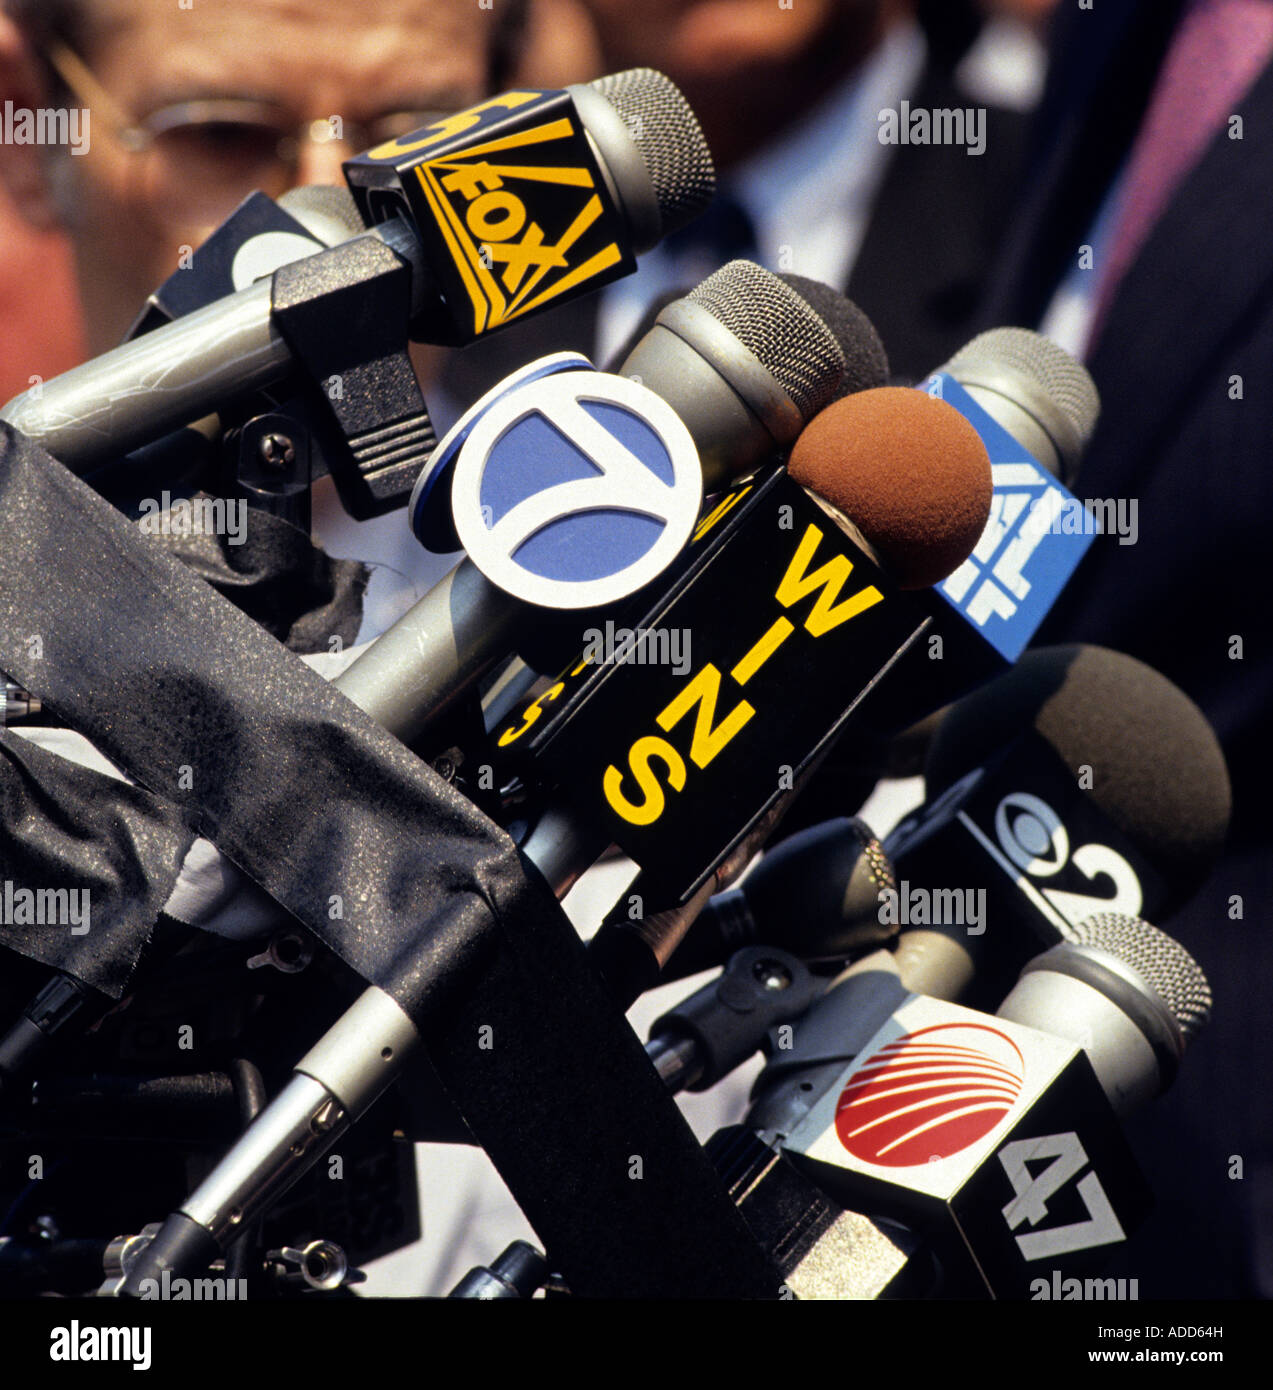 Los micrófonos de los medios de comunicación están agrupadas en un stand durante una conferencia de prensa al aire libre Foto de stock